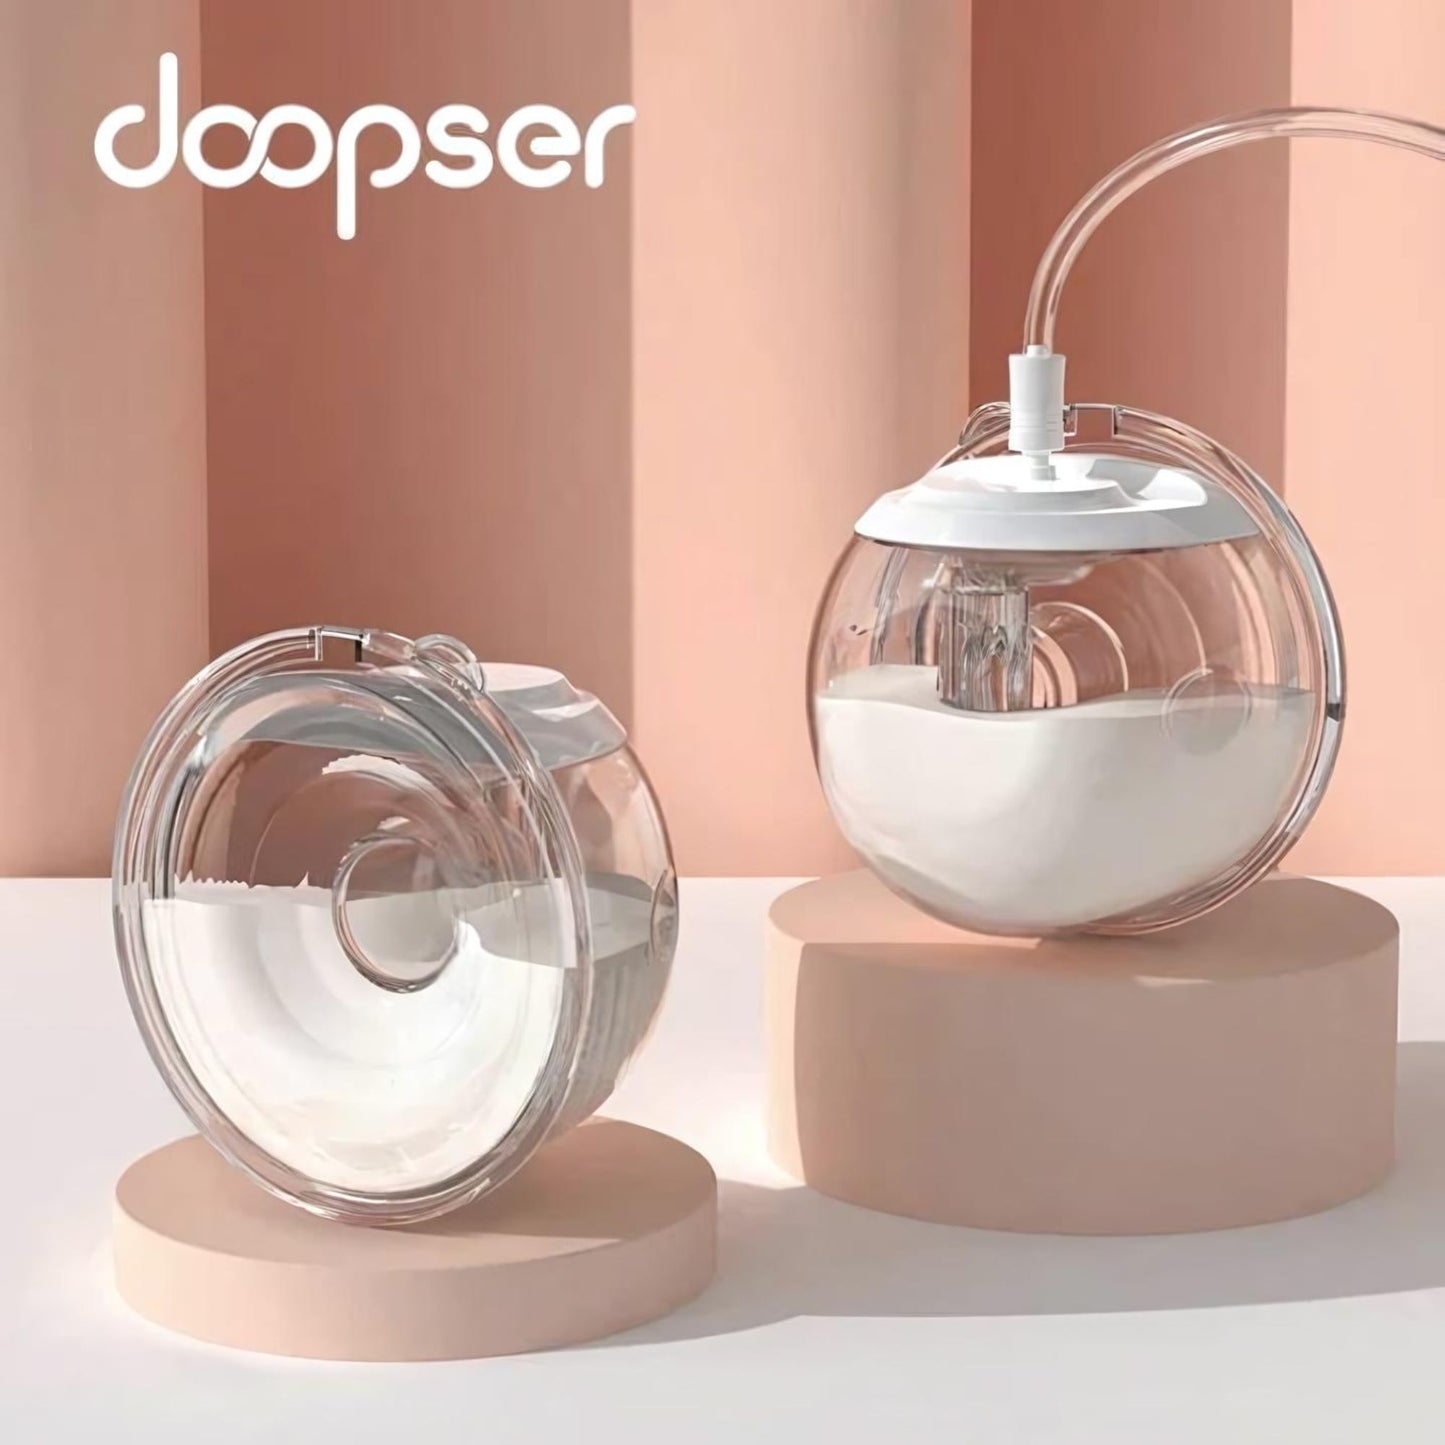 Doopser Wearable Breast Pump